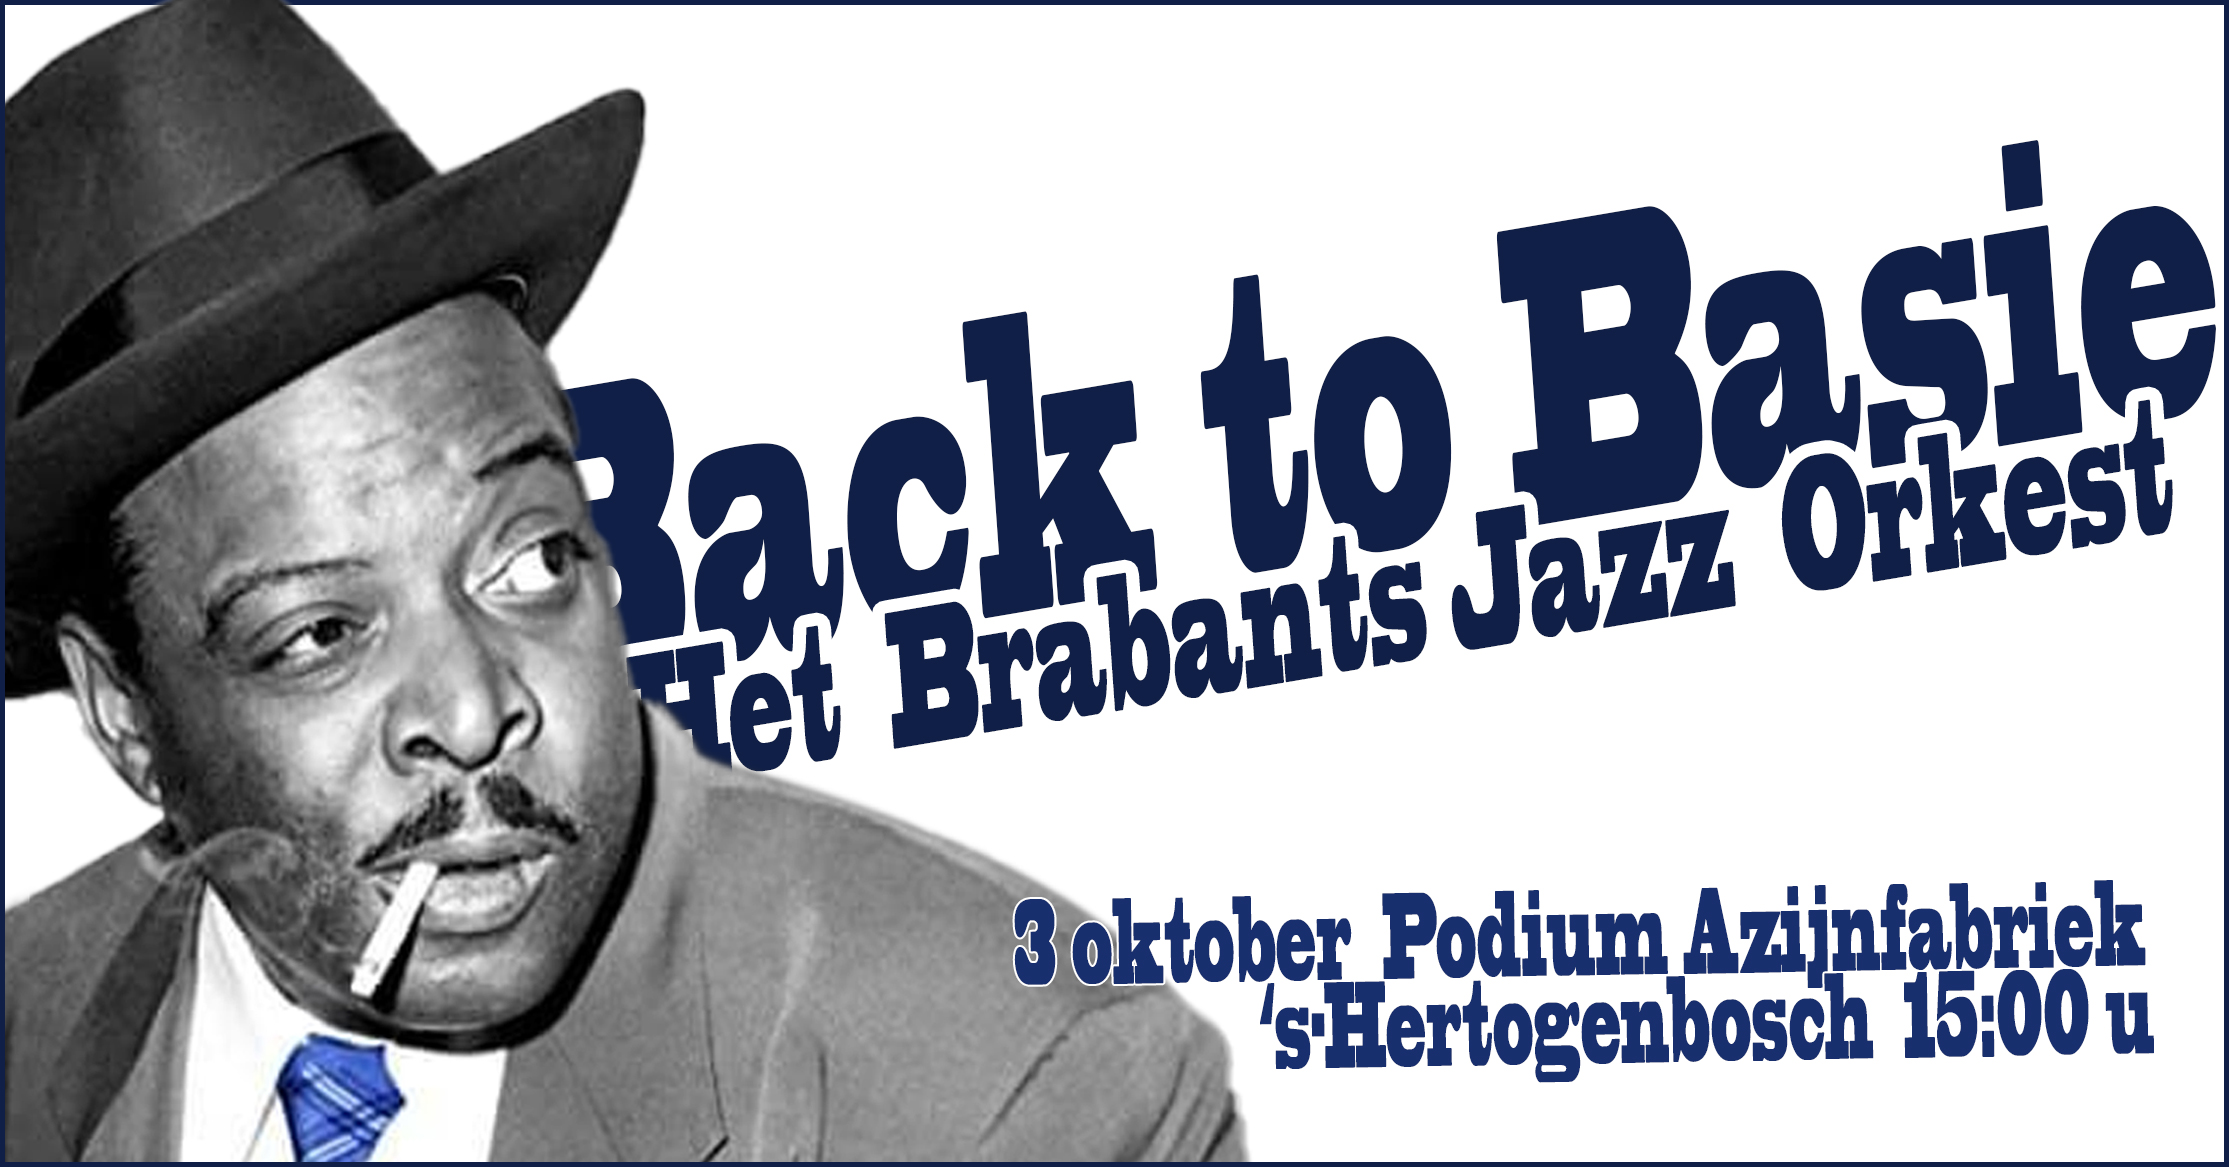 Ticket kopen voor evenement Het Brabants Jazz Orkest ‘Back To Basie’